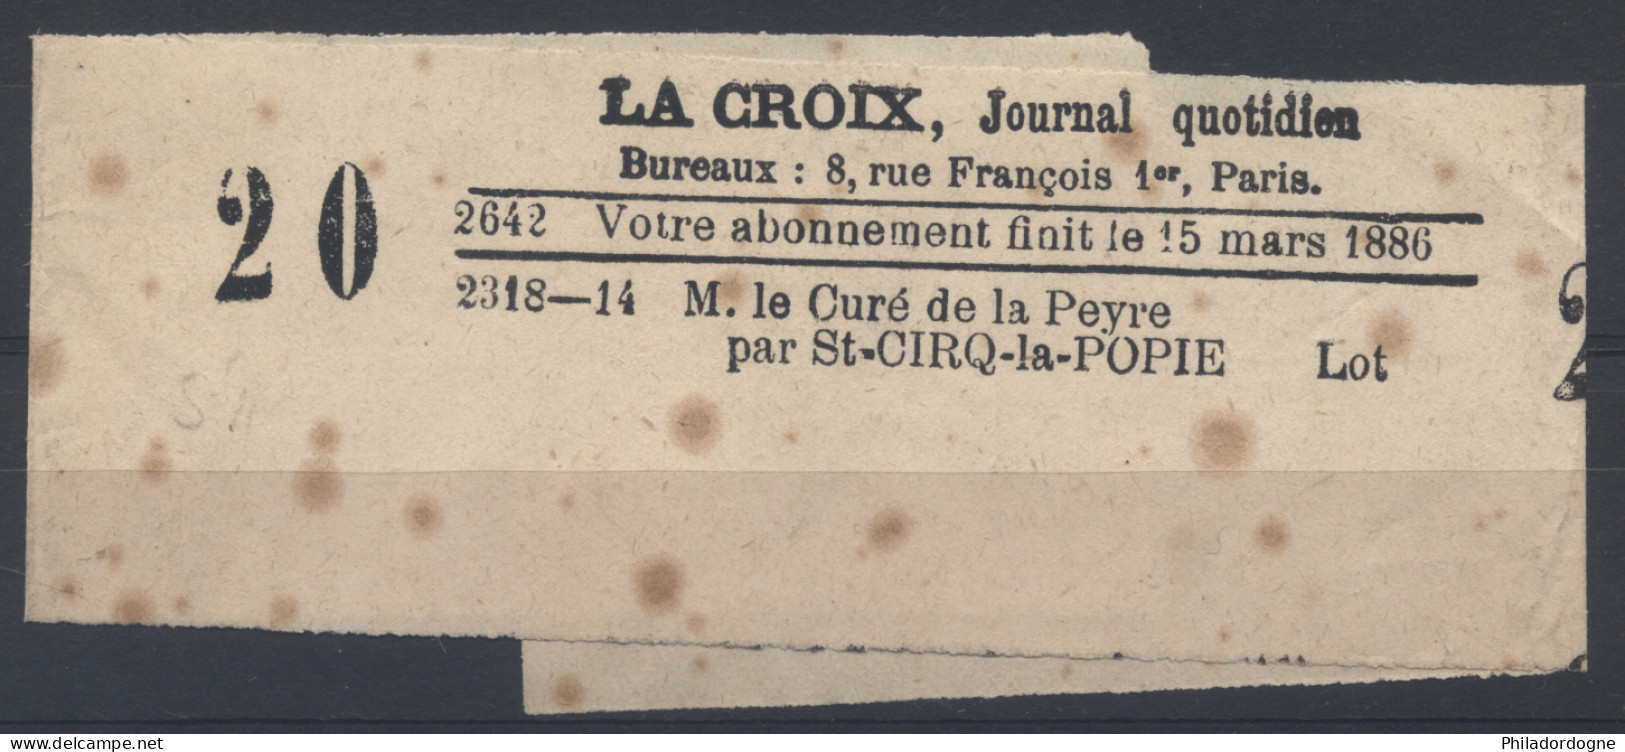 France - Bande Pour Journal La Croix Par St Cirq La Popie Lot 1885 Obl. Journaux Paris PP 44 - Journaux